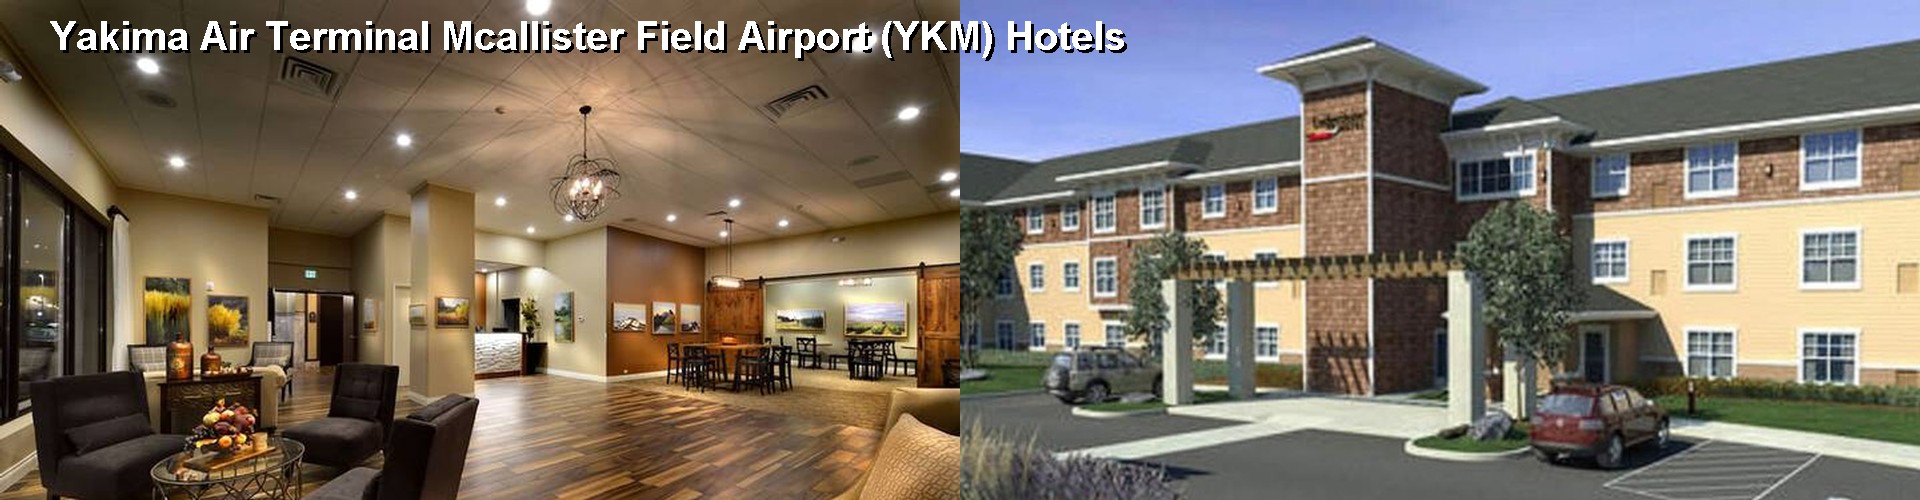 5 Best Hotels near Yakima Air Terminal Mcallister Field Airport (YKM)